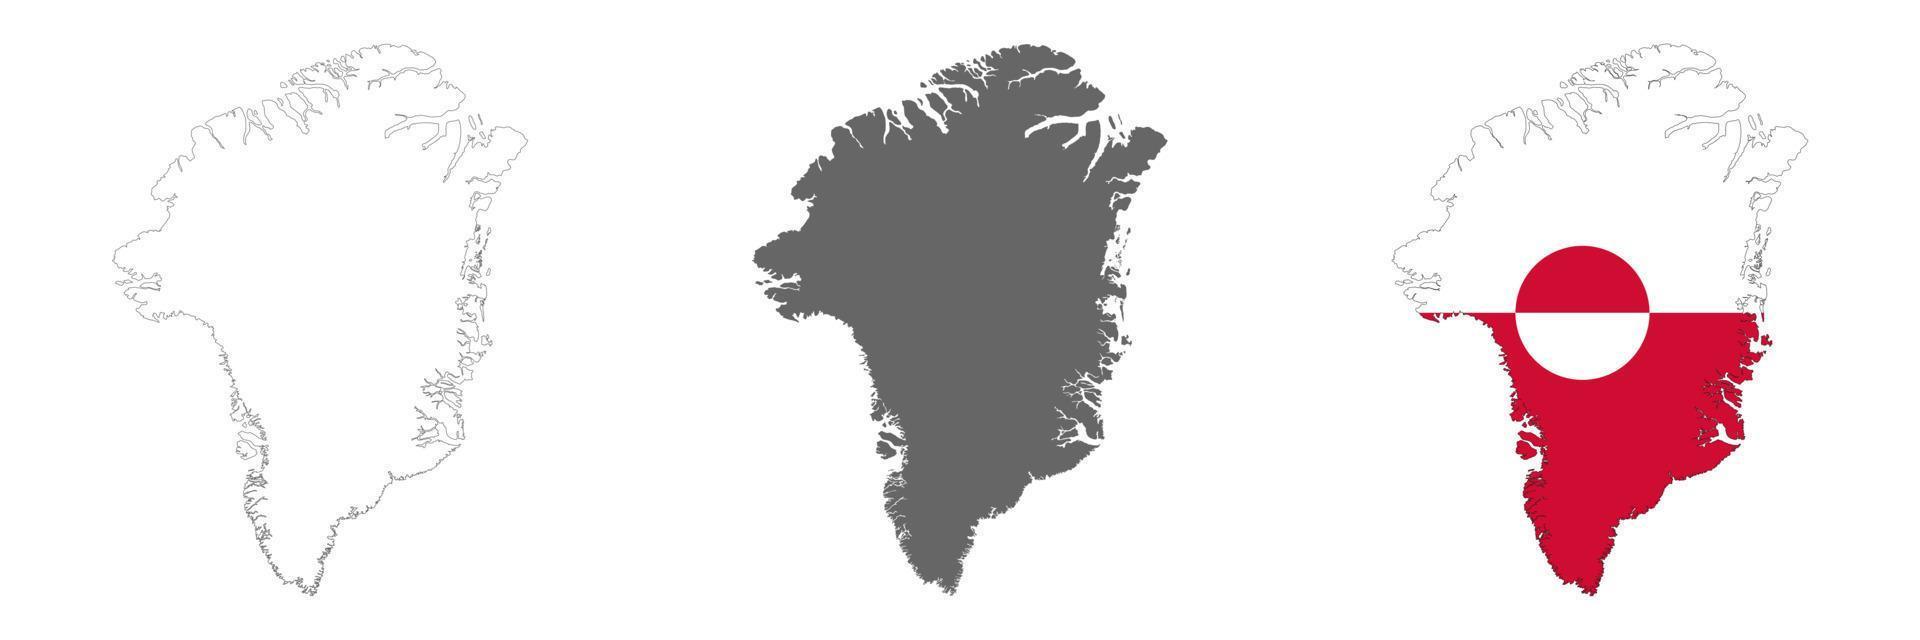 Mapa de Groenlandia muy detallado con bordes aislados en segundo plano. vector